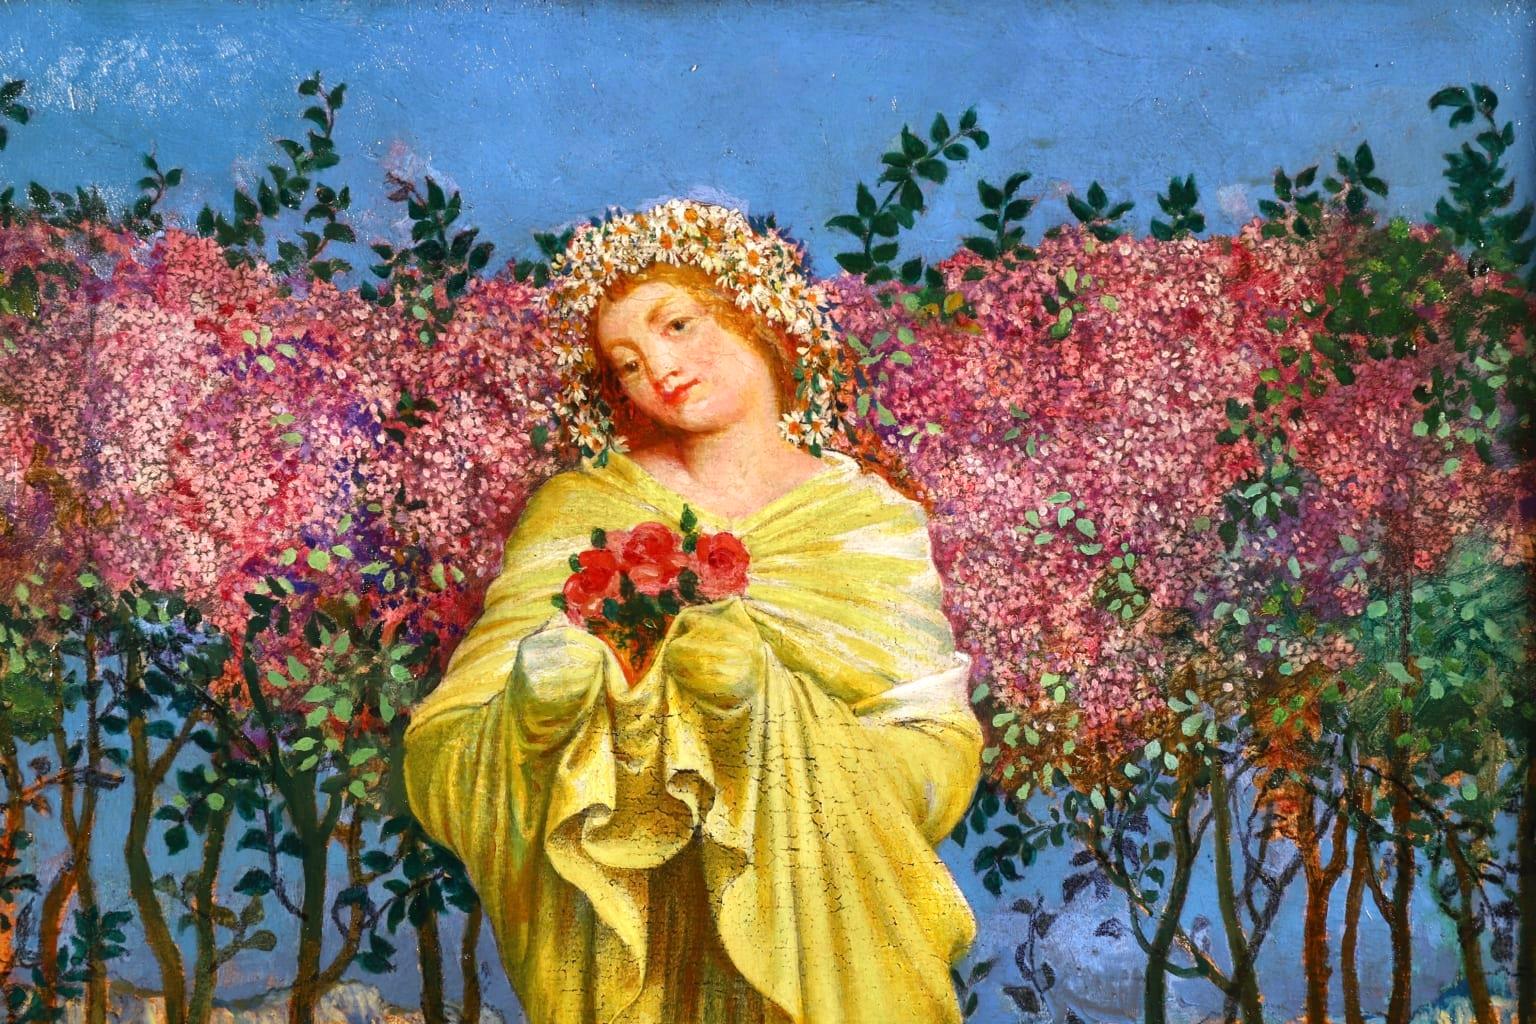 Picking Flowers - Symbolist Oil, Portrait of Woman in Landscape - Valere-Bernard 2